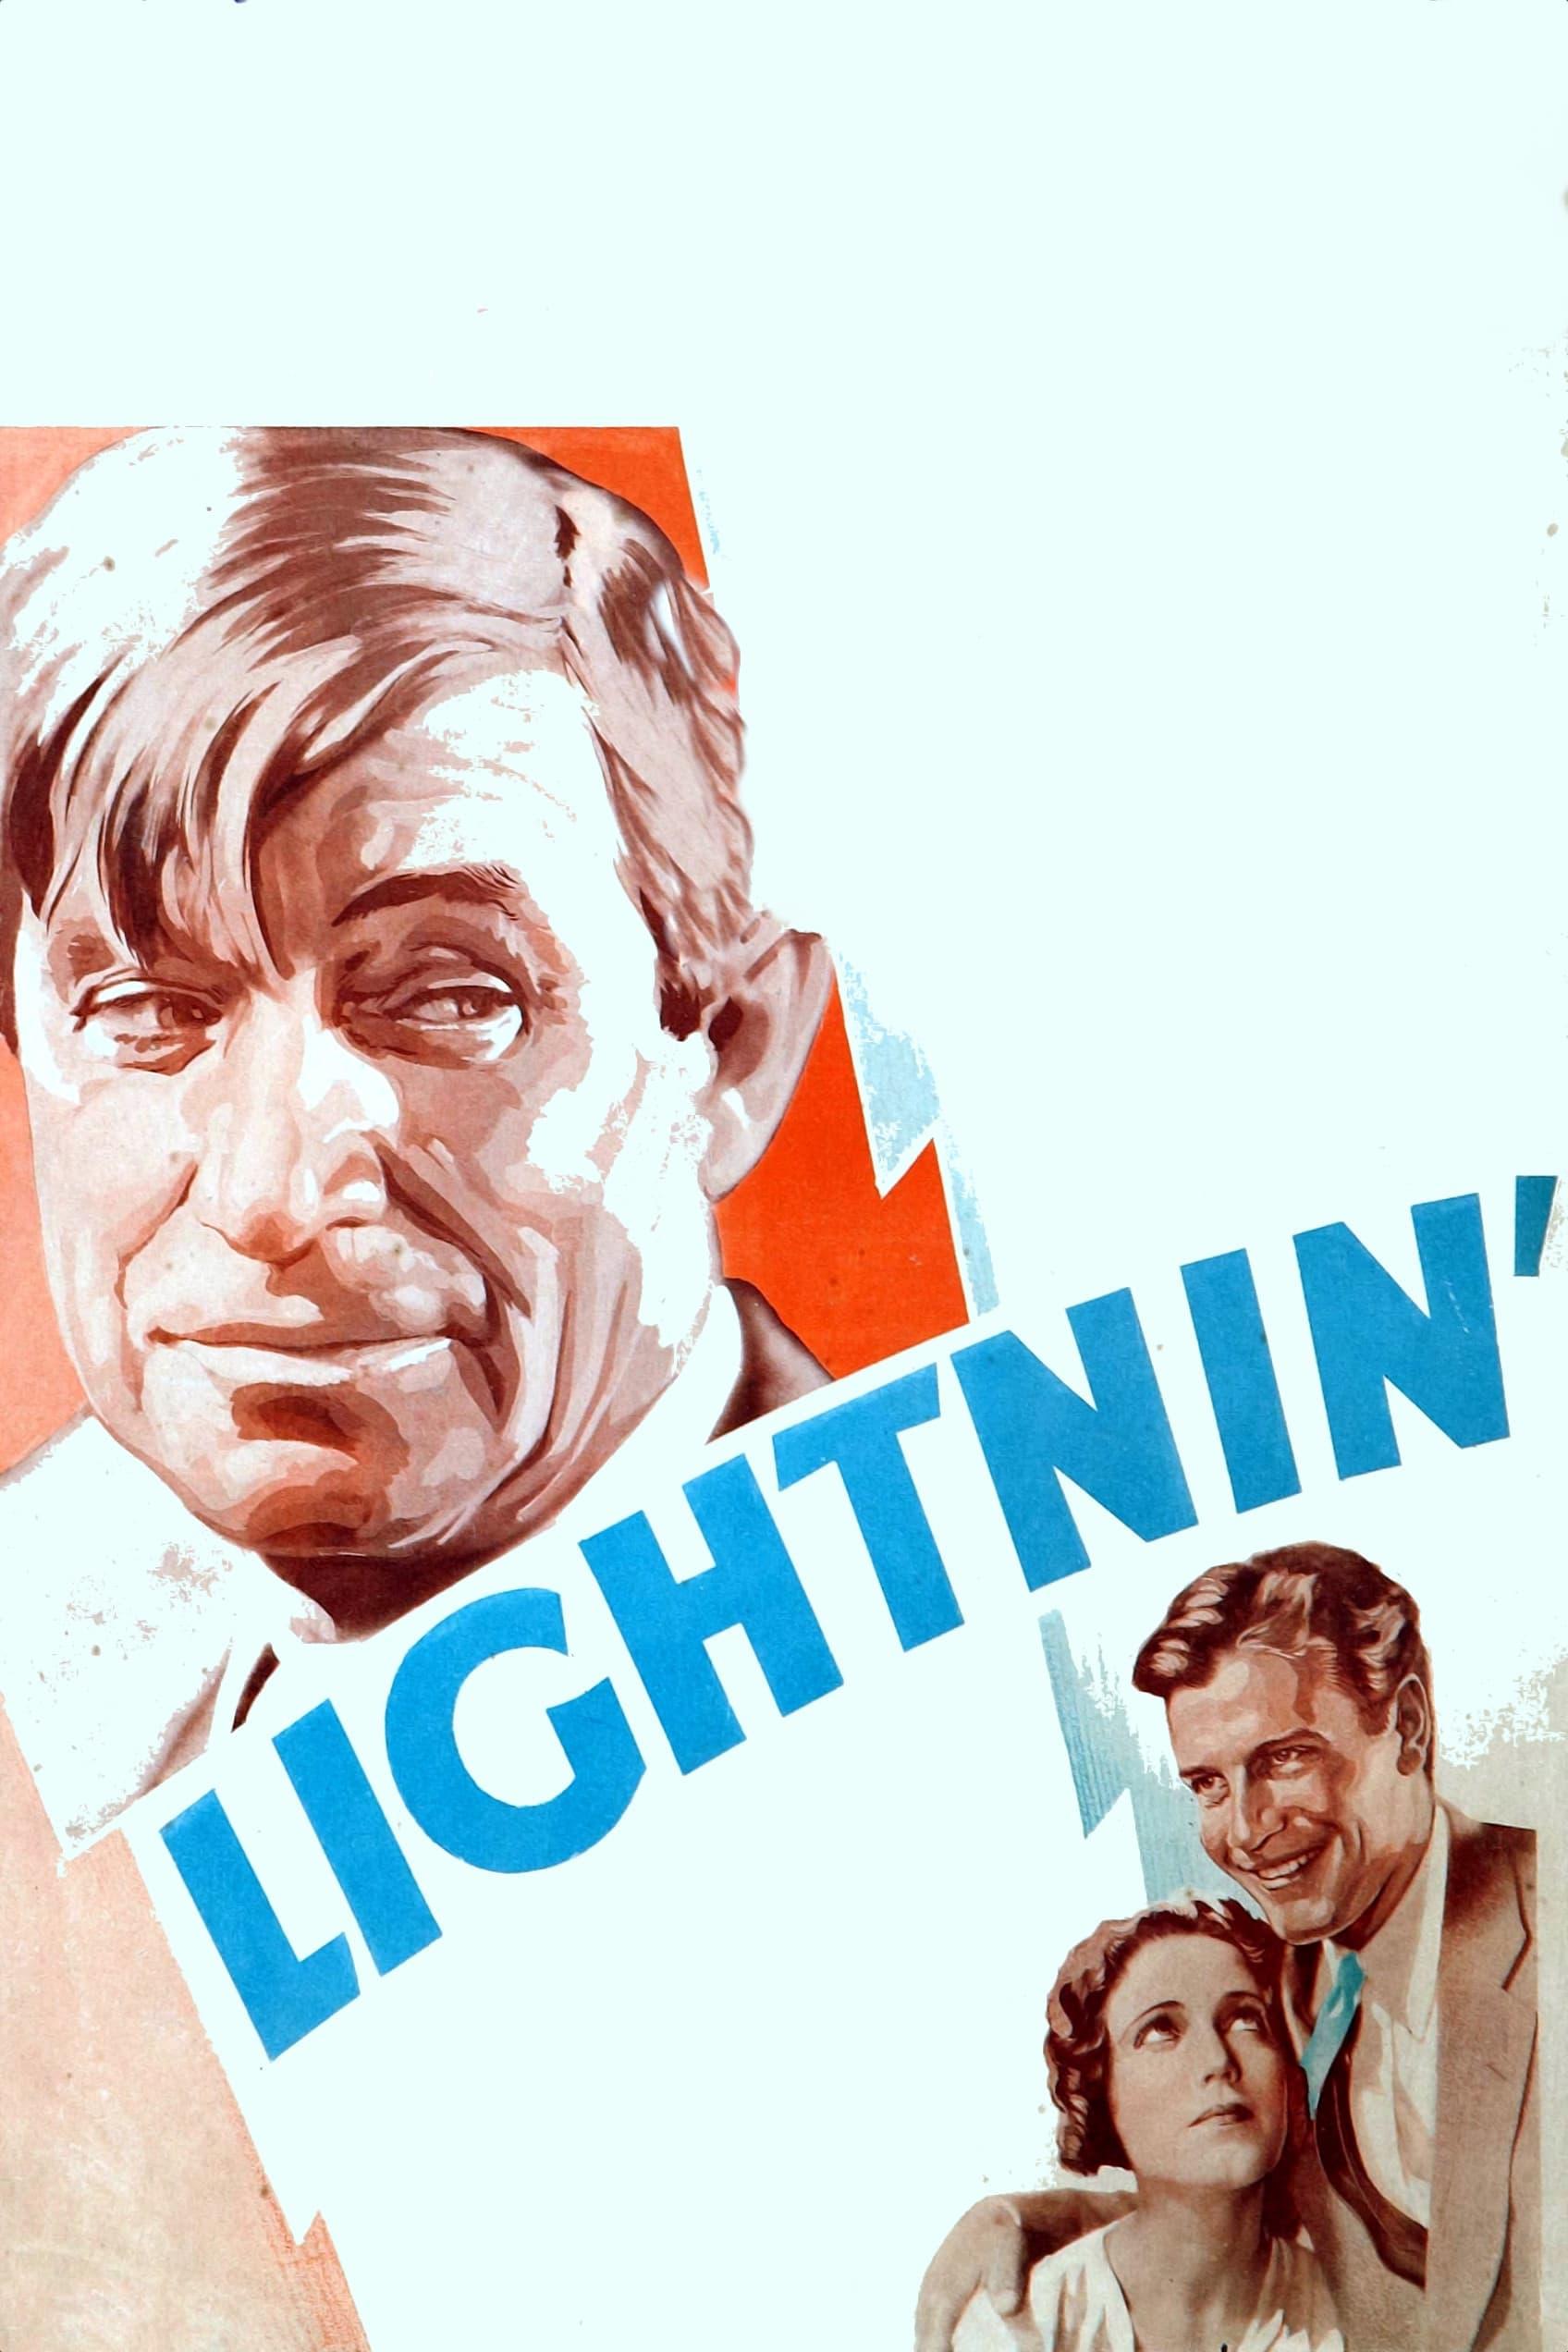 Lightnin' poster